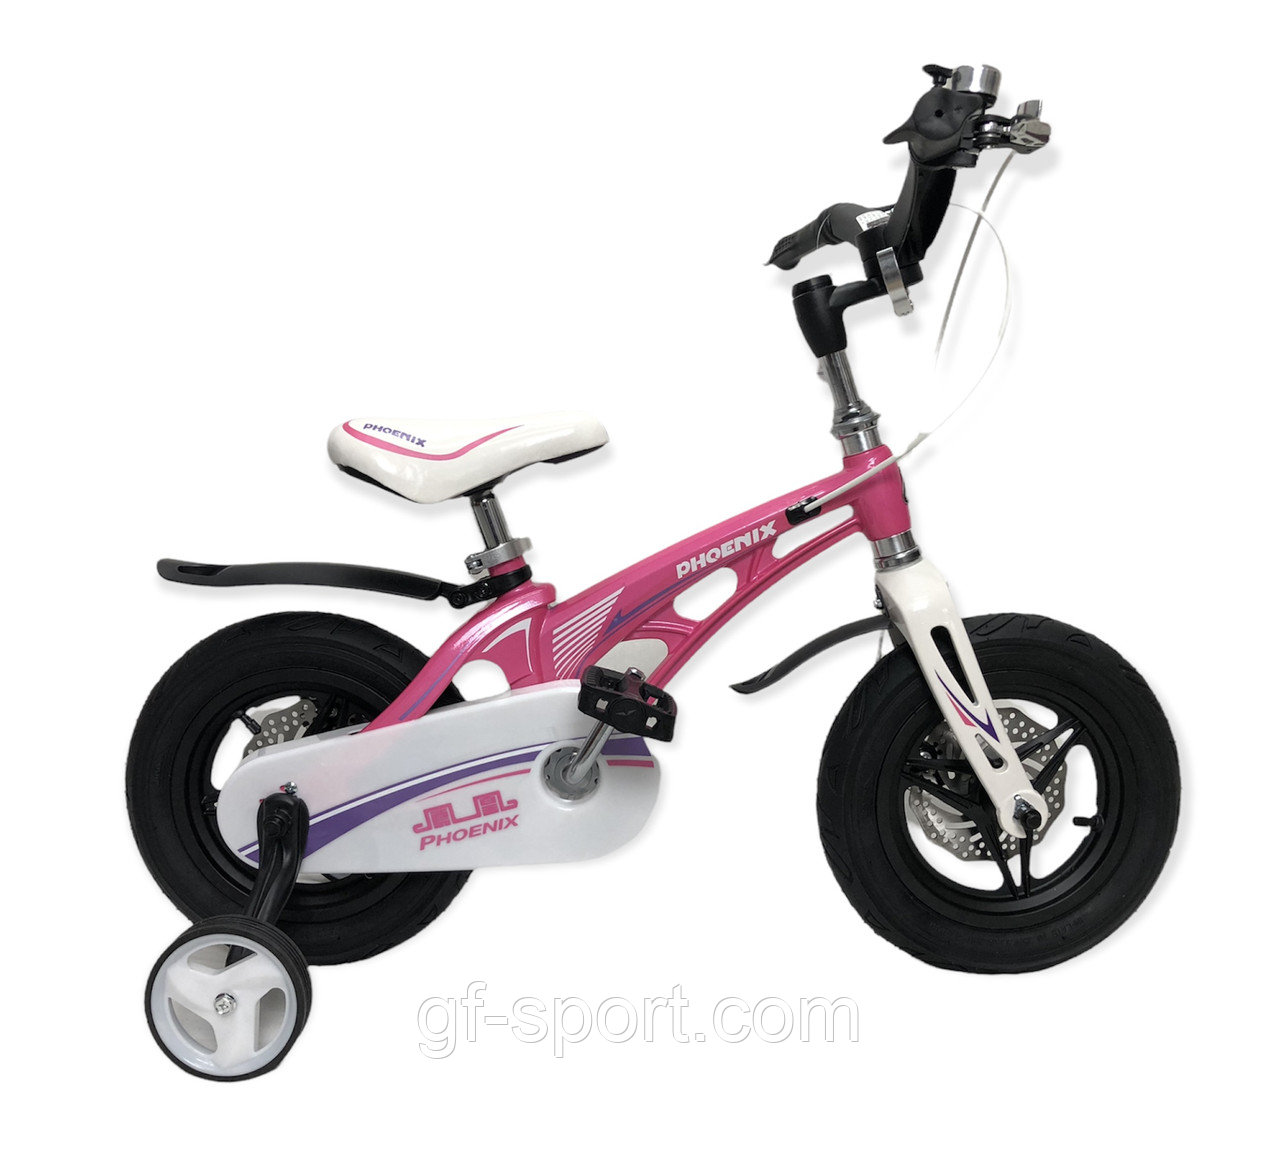 Велосипед Phoenix розовый алюминиевый сплав оригинал детский с холостым ходом 12 размер (529-12)